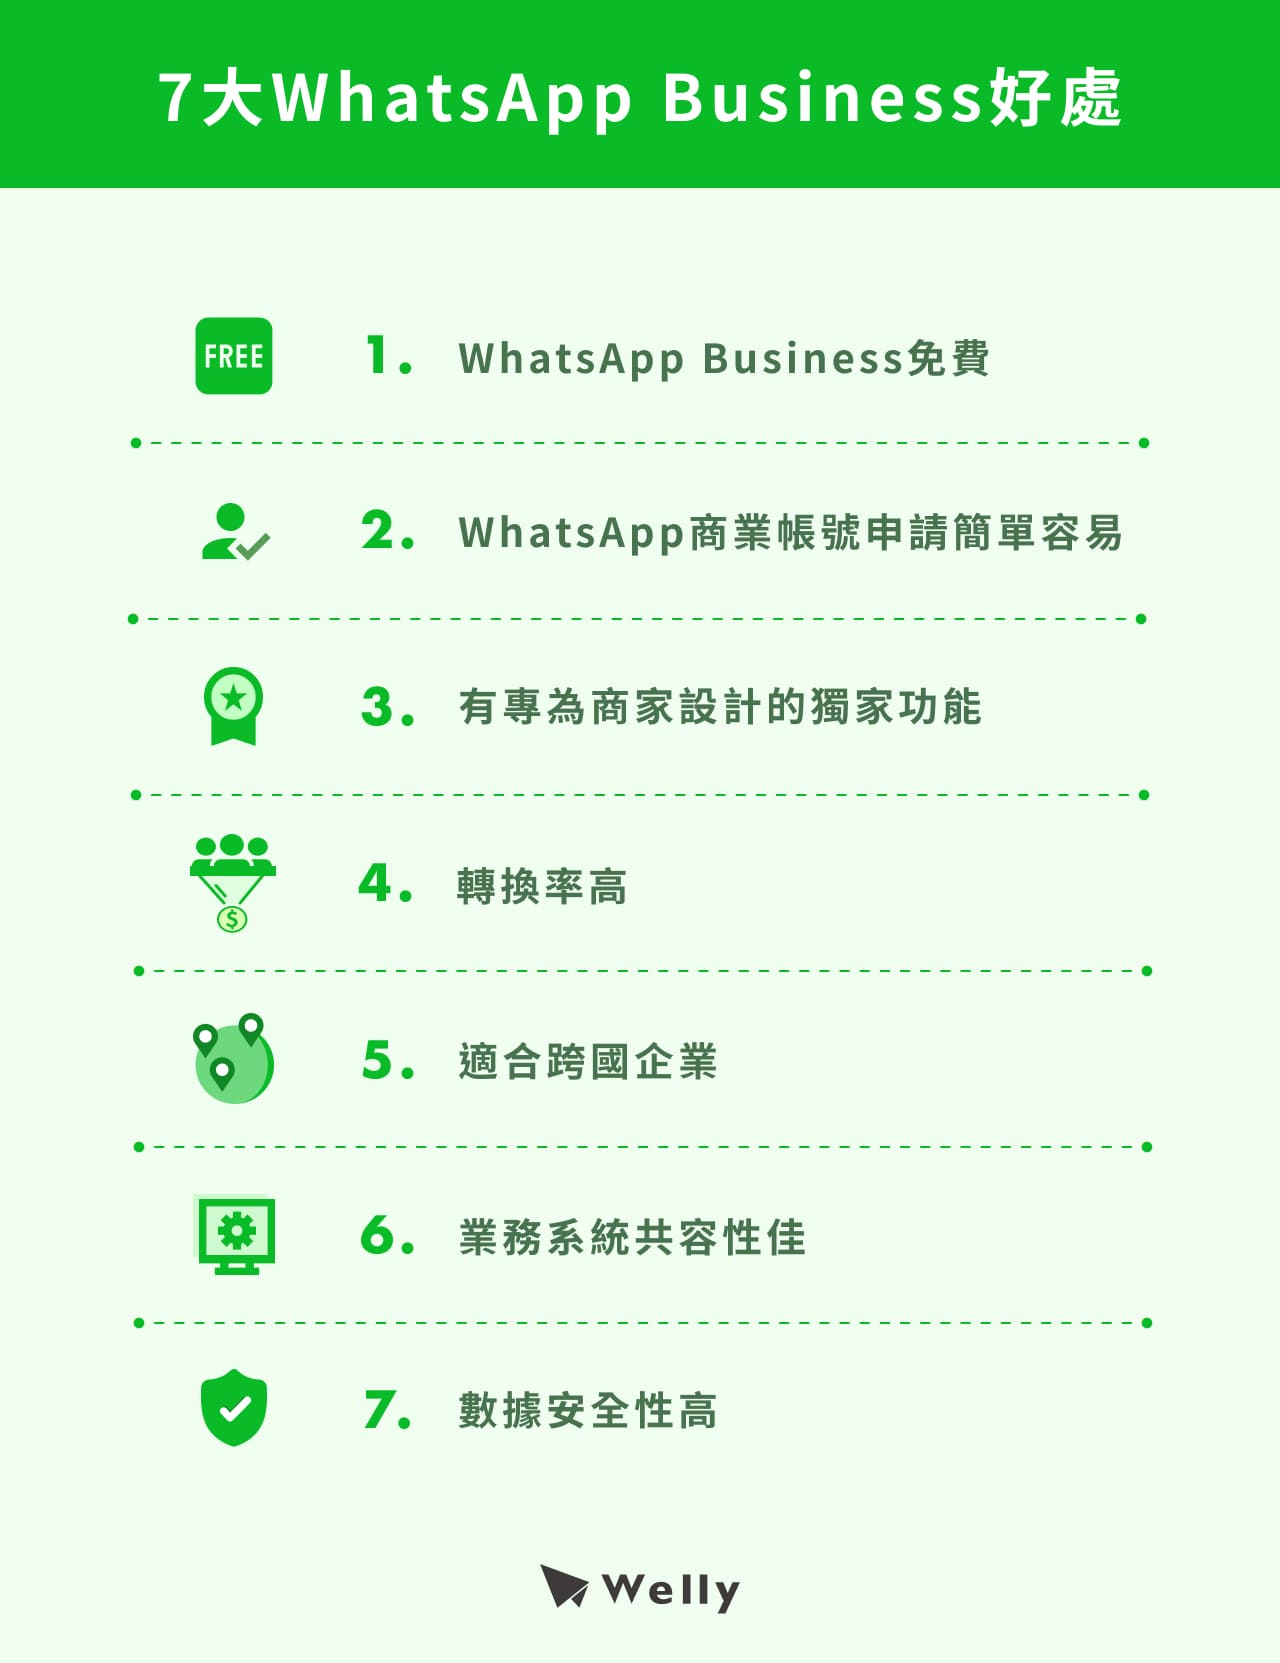 7大WhatsApp Business好處：WhatsApp Business免費、WhatsApp商業帳號申請簡單容易、有專為商家設計的獨家功能、轉換率高、適合跨國企業、業務系統共容性佳、數據安全性高